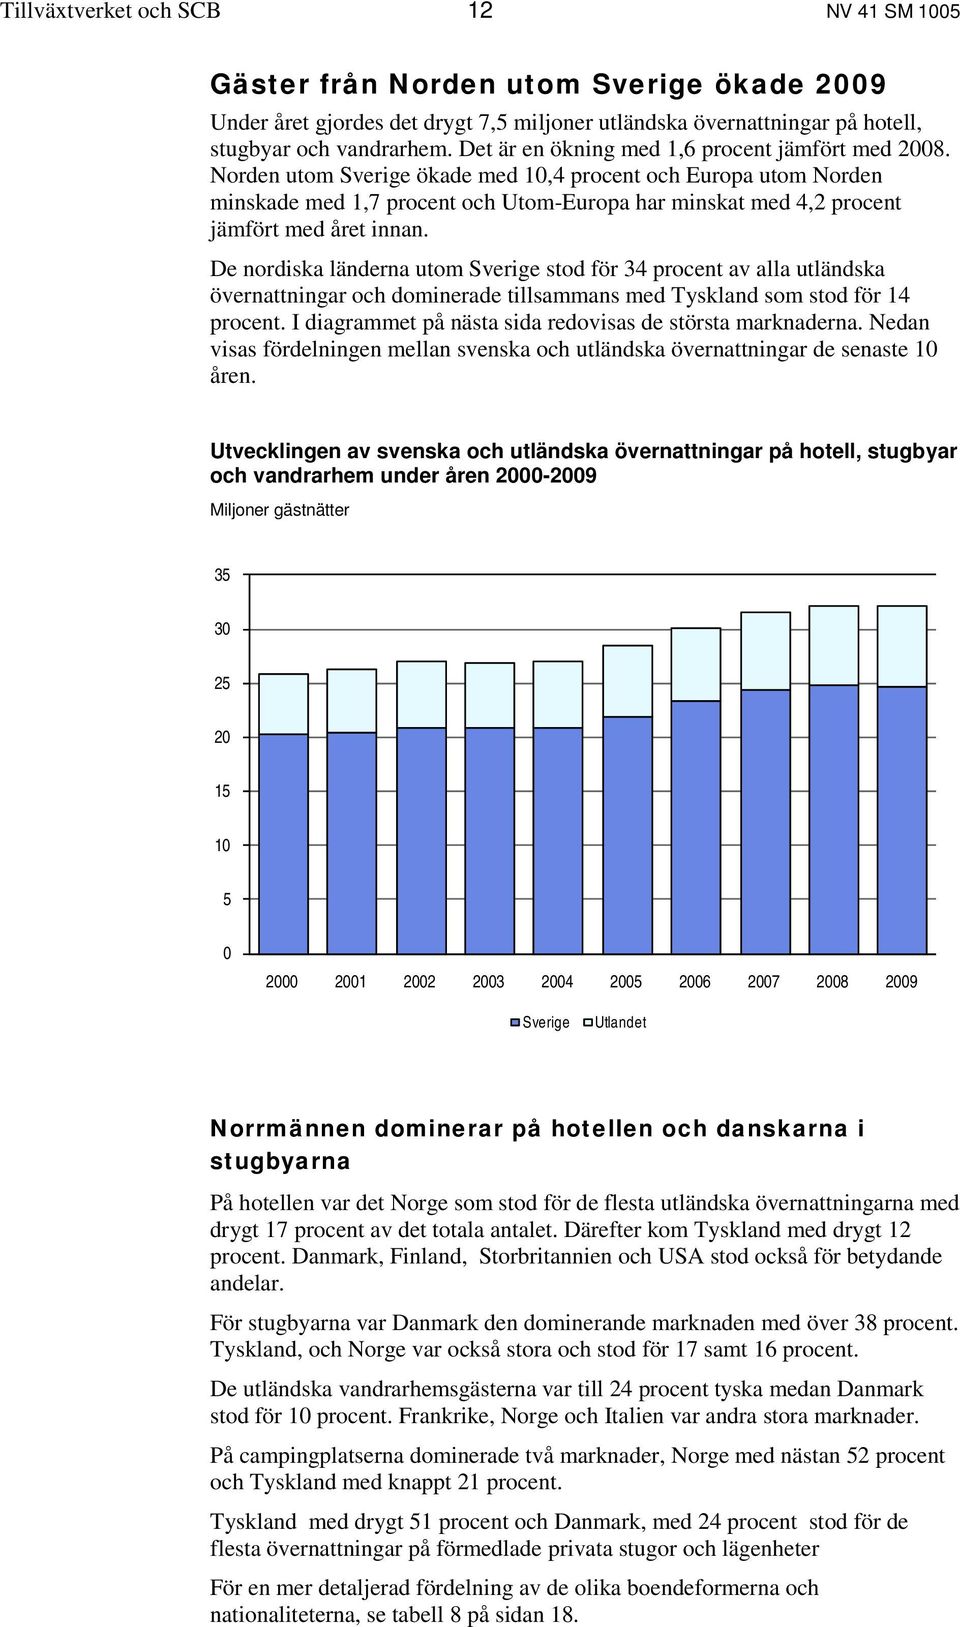 Norden utom Sverige ökade med 10,4 procent och Europa utom Norden minskade med 1,7 procent och Utom-Europa har minskat med 4,2 procent jämfört med året innan.